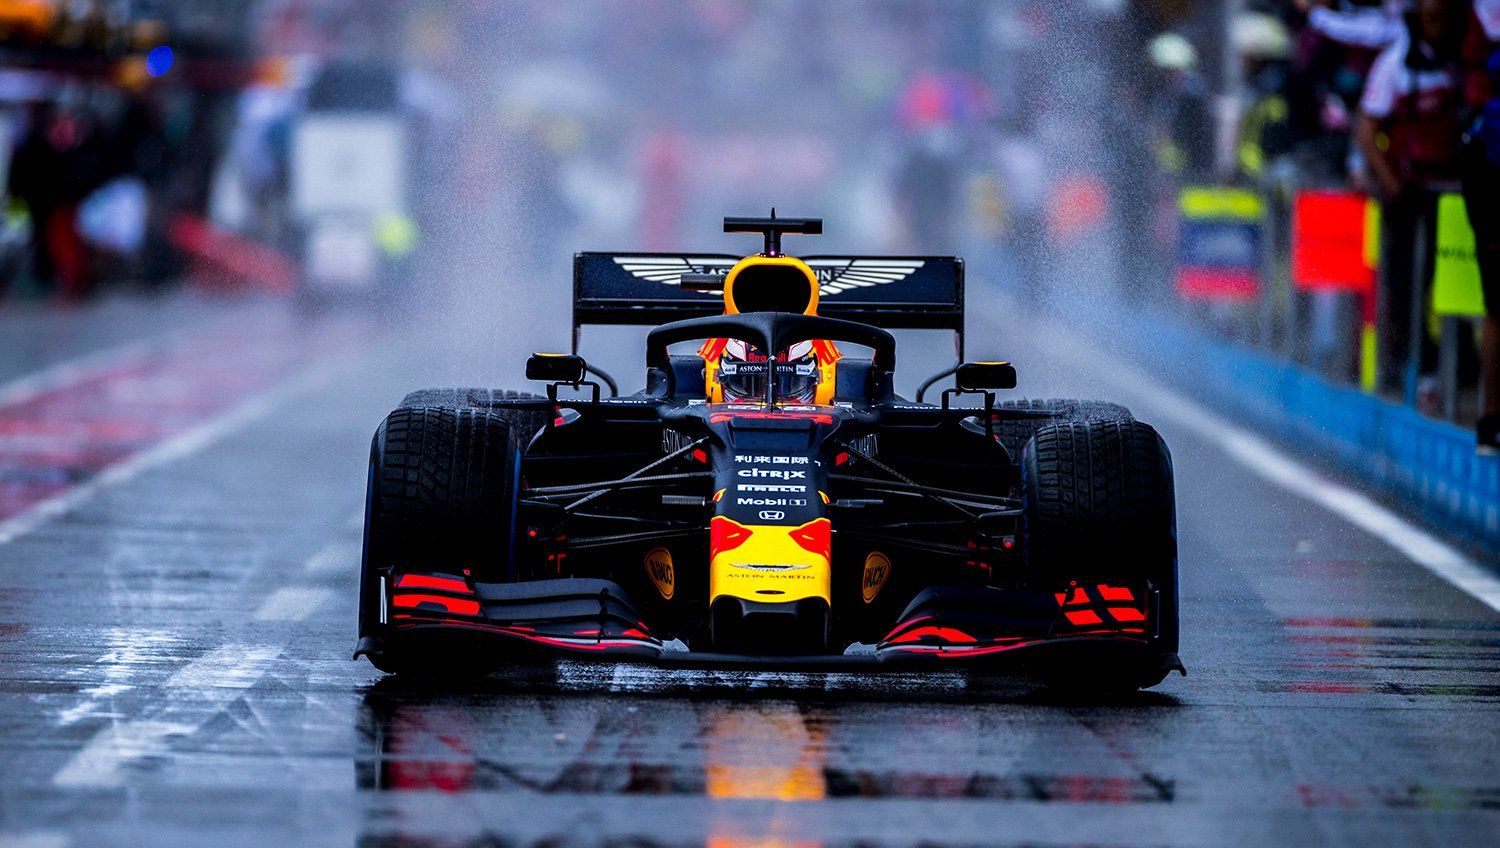 Red Bull F1 Wallpaper 4k 2021 - carrotapp